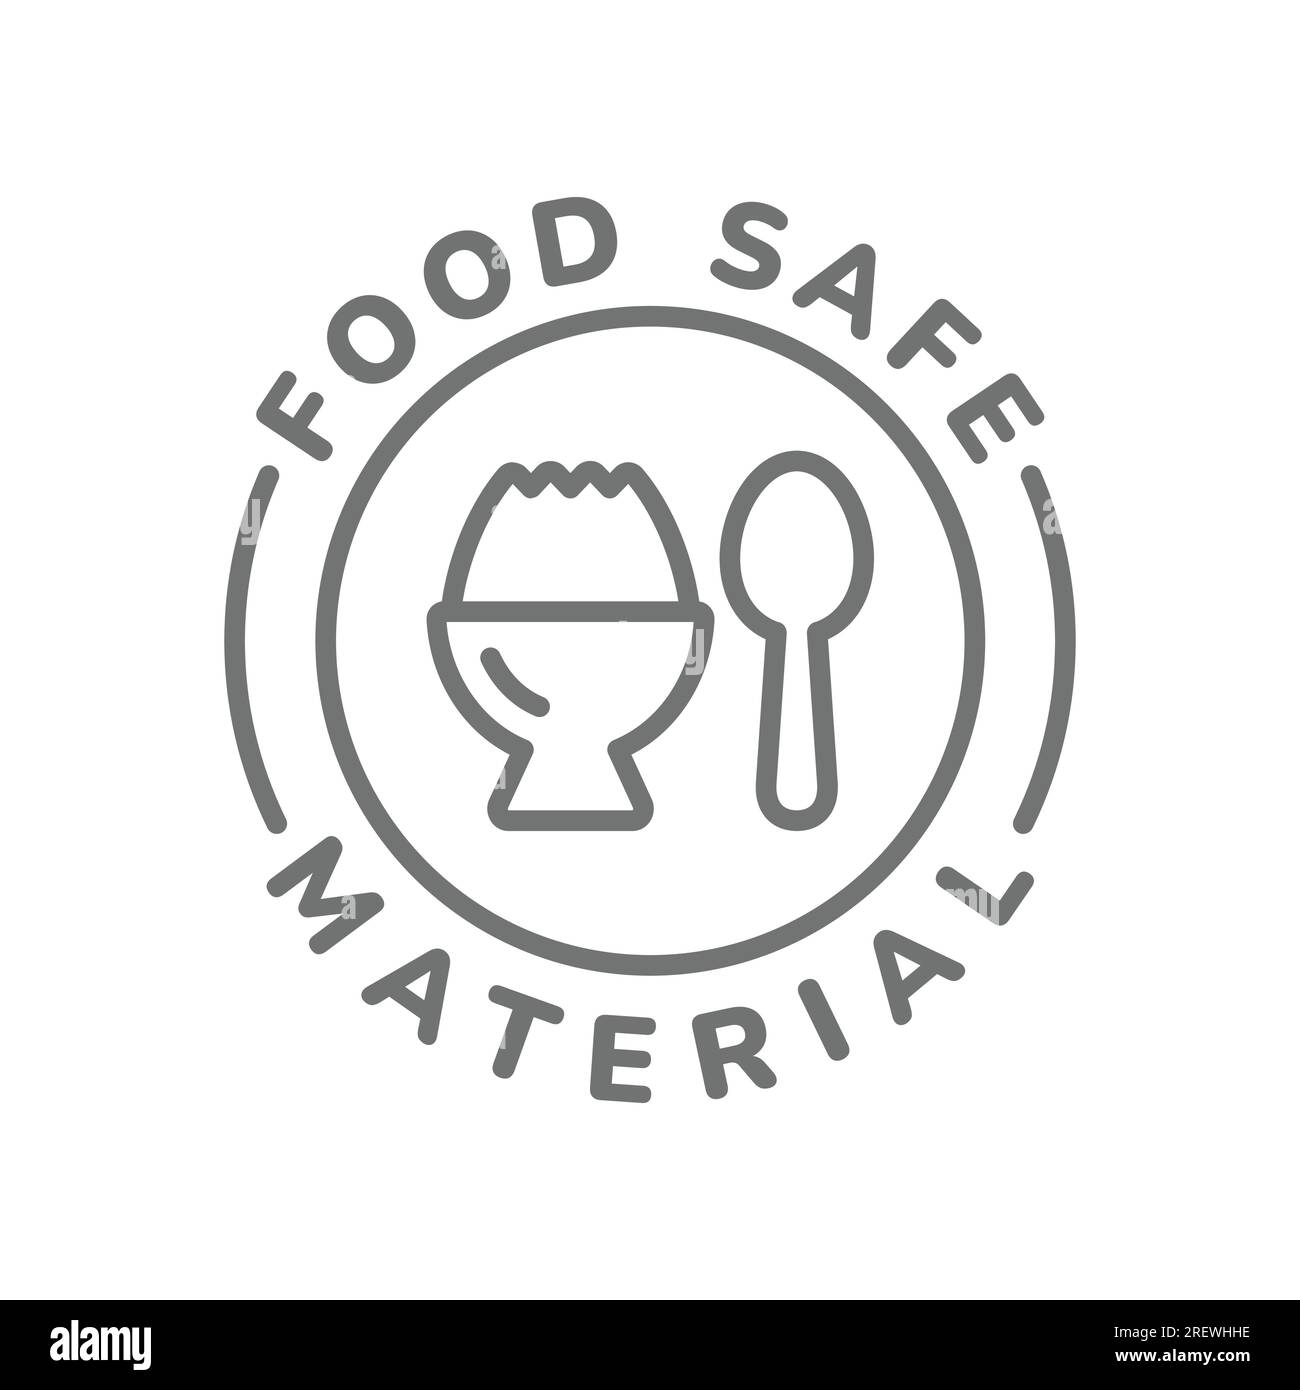 https://c8.alamy.com/comp/2REWHHE/food-safe-material-line-label-vector-outline-sticker-for-food-safety-2REWHHE.jpg